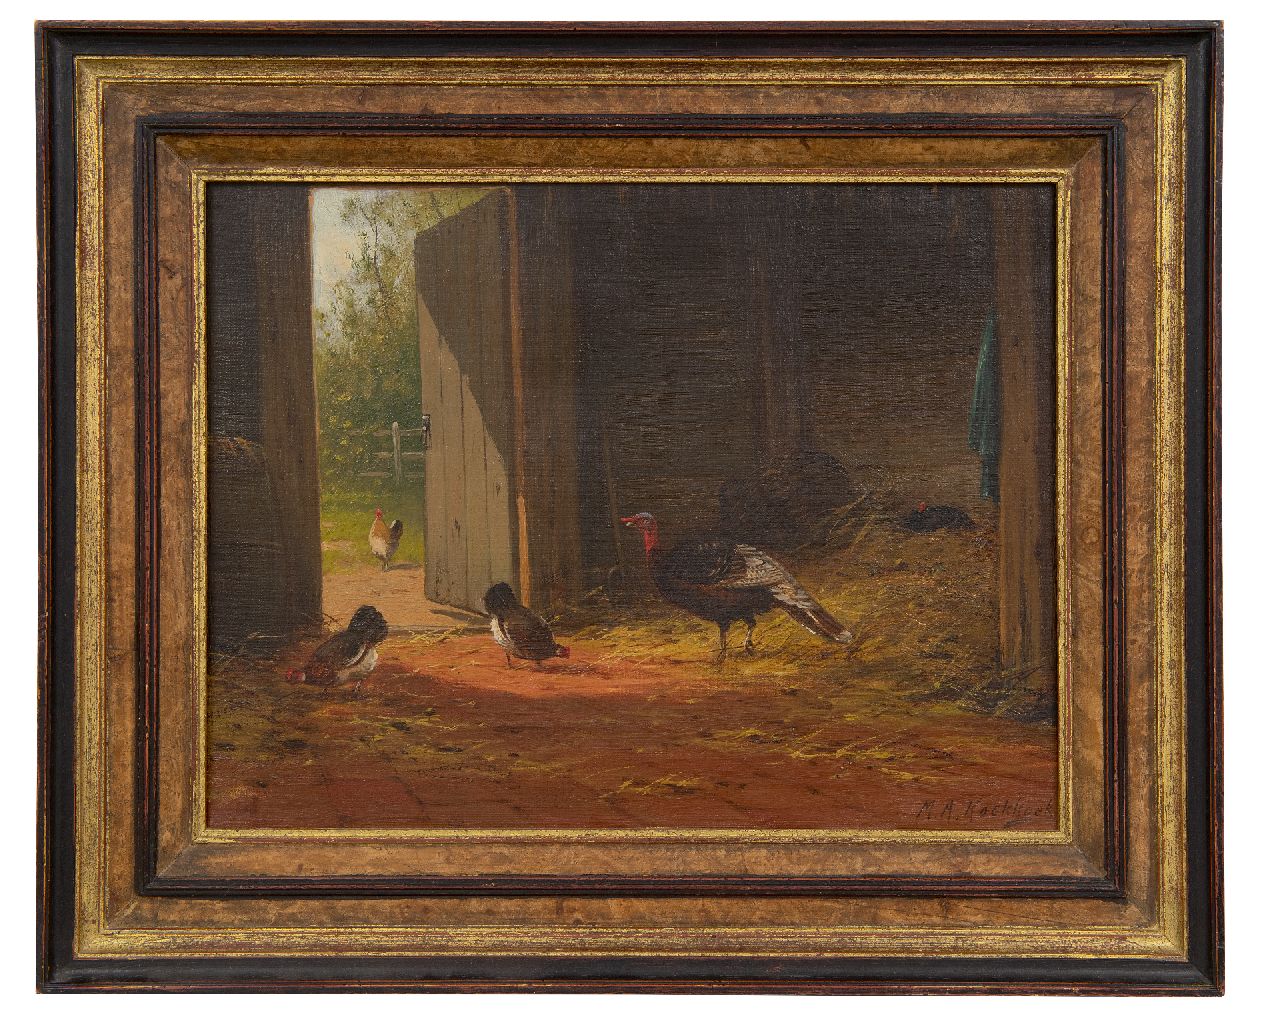 Koekkoek II M.A.  | Marinus Adrianus Koekkoek II | Paintings offered for sale | In the barn, oil on canvas 27.3 x 35.5 cm, signed l.r.